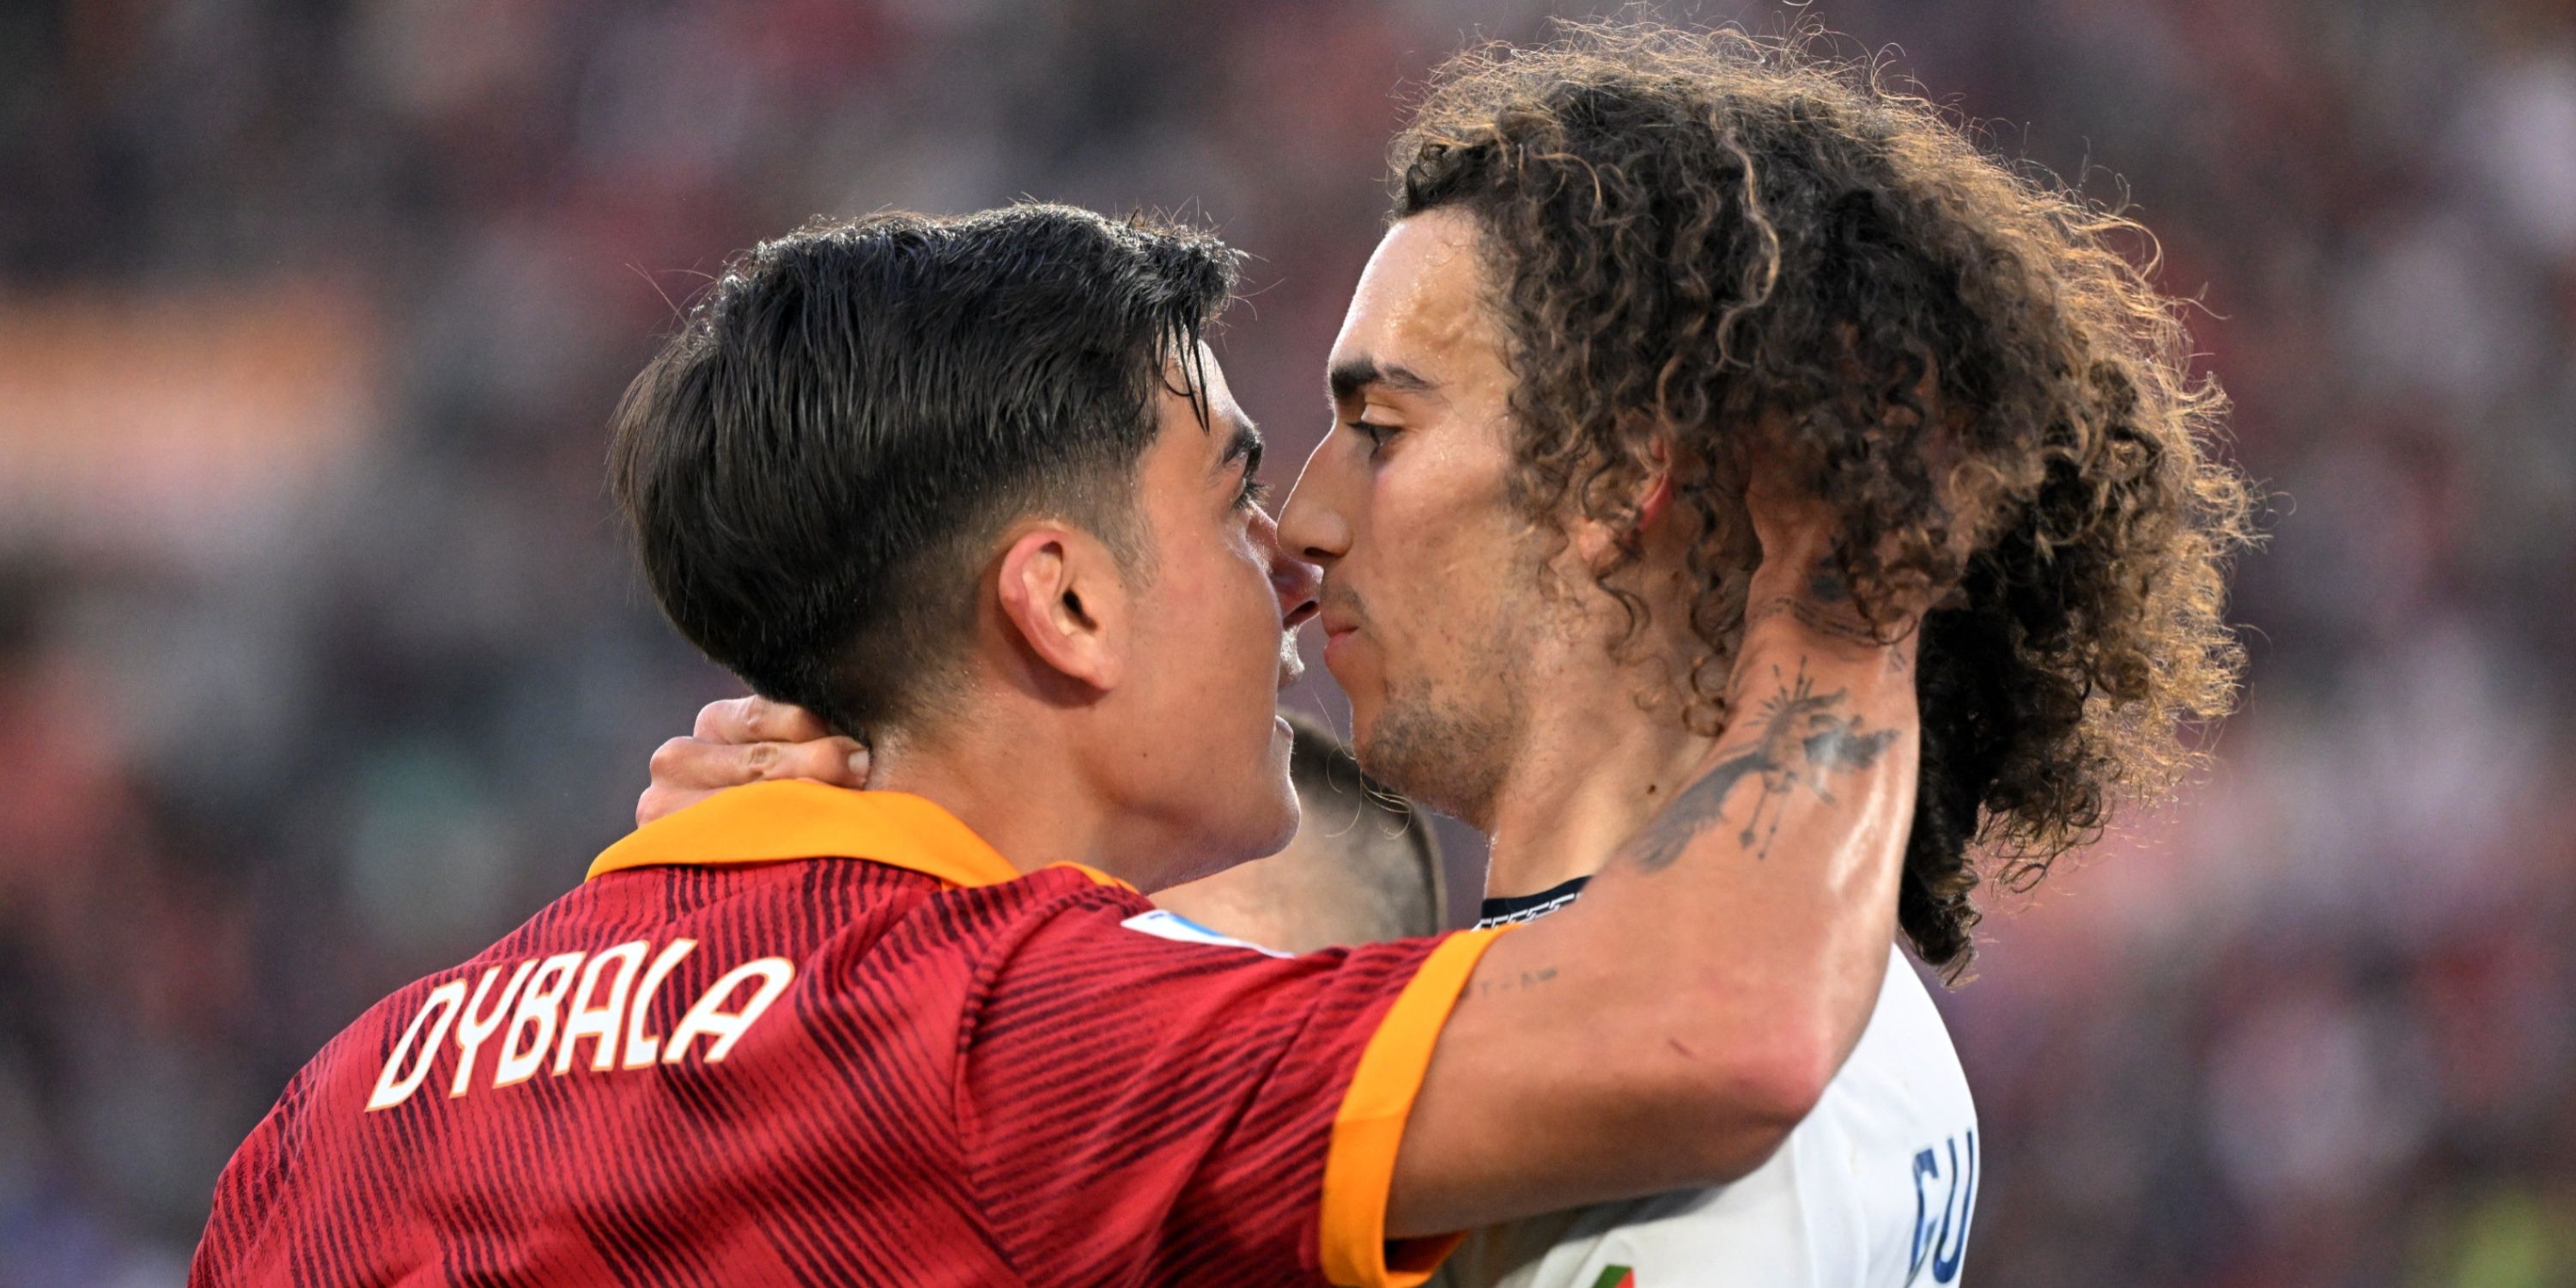 AS Roma's Paulo Dybala clashes with Lazio's Matteo Guendouzi